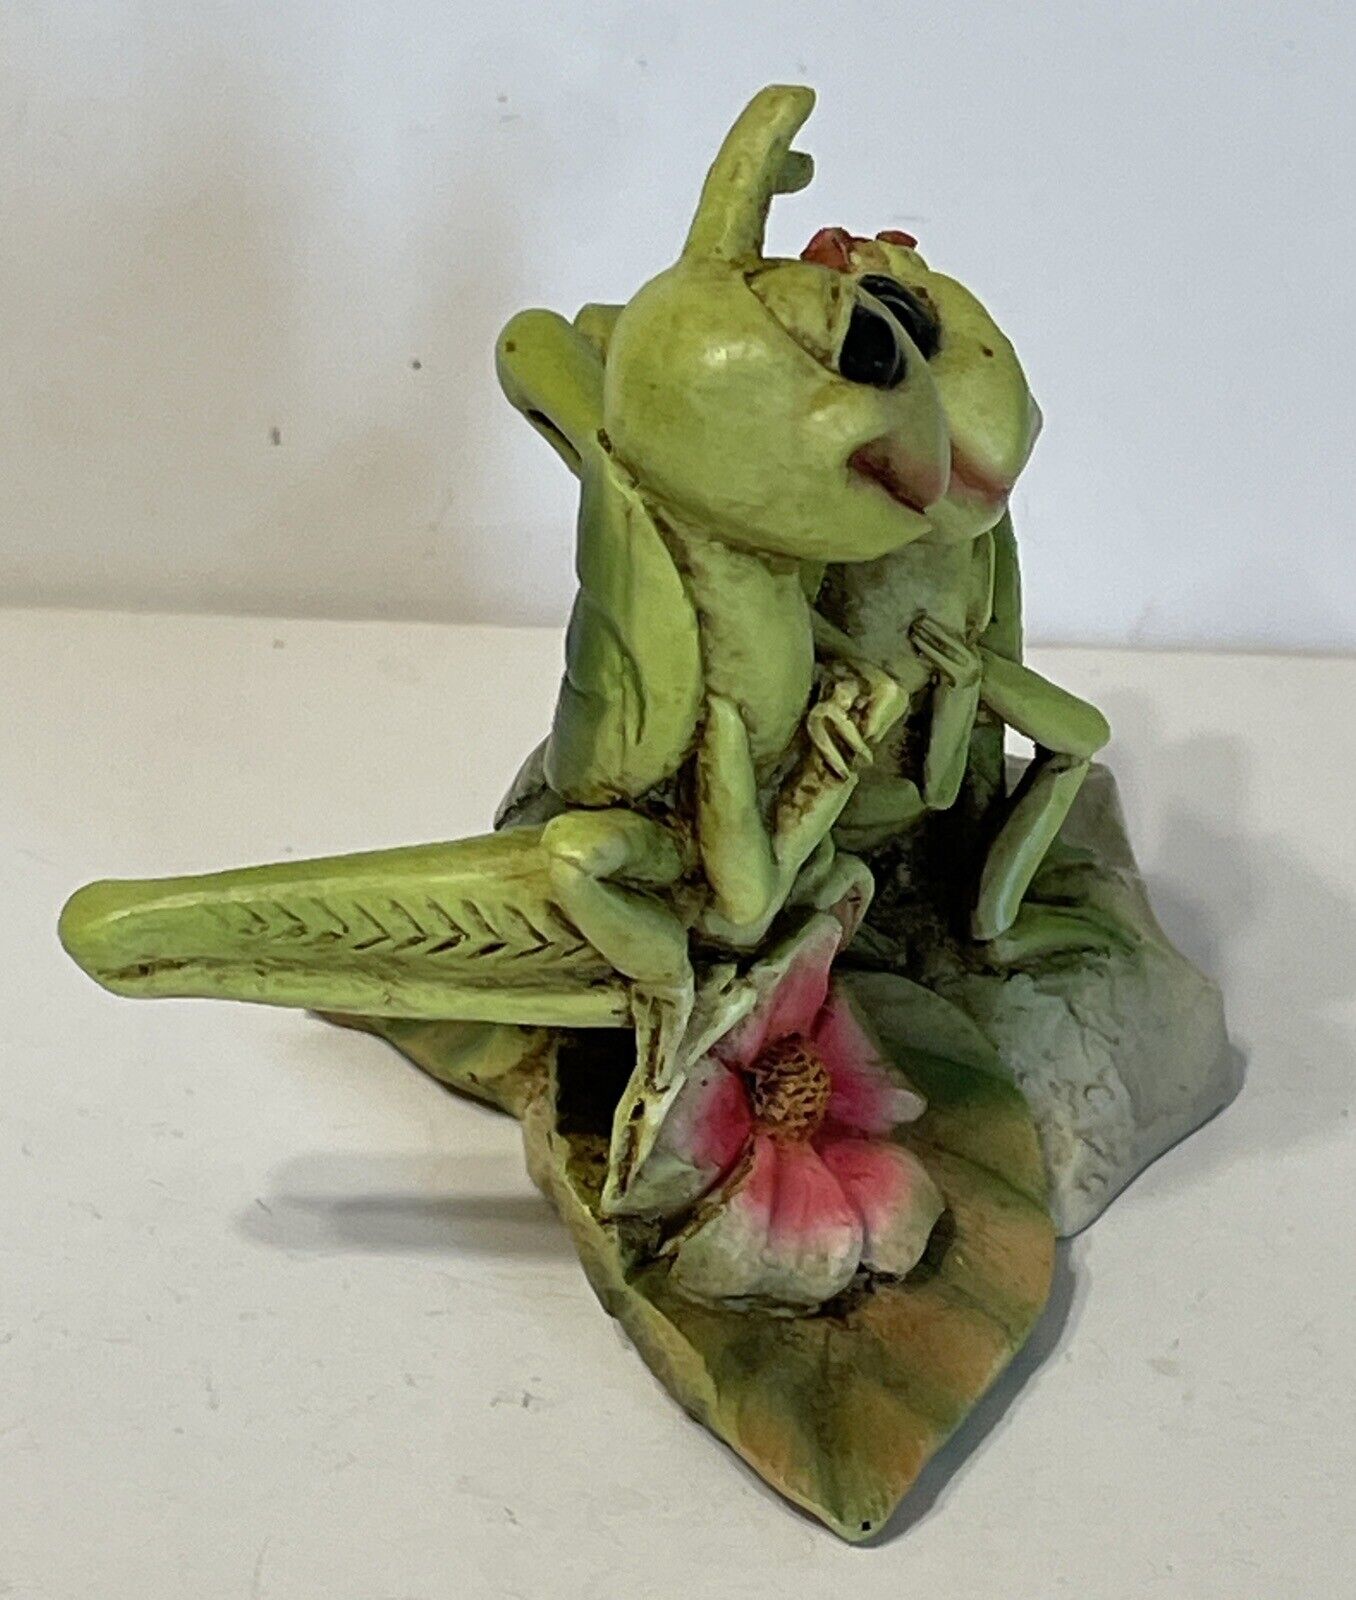 New Grasshopper Lovers Sculptures By Castagna Flower Leaf Figurine COA Без бренда - фотография #5